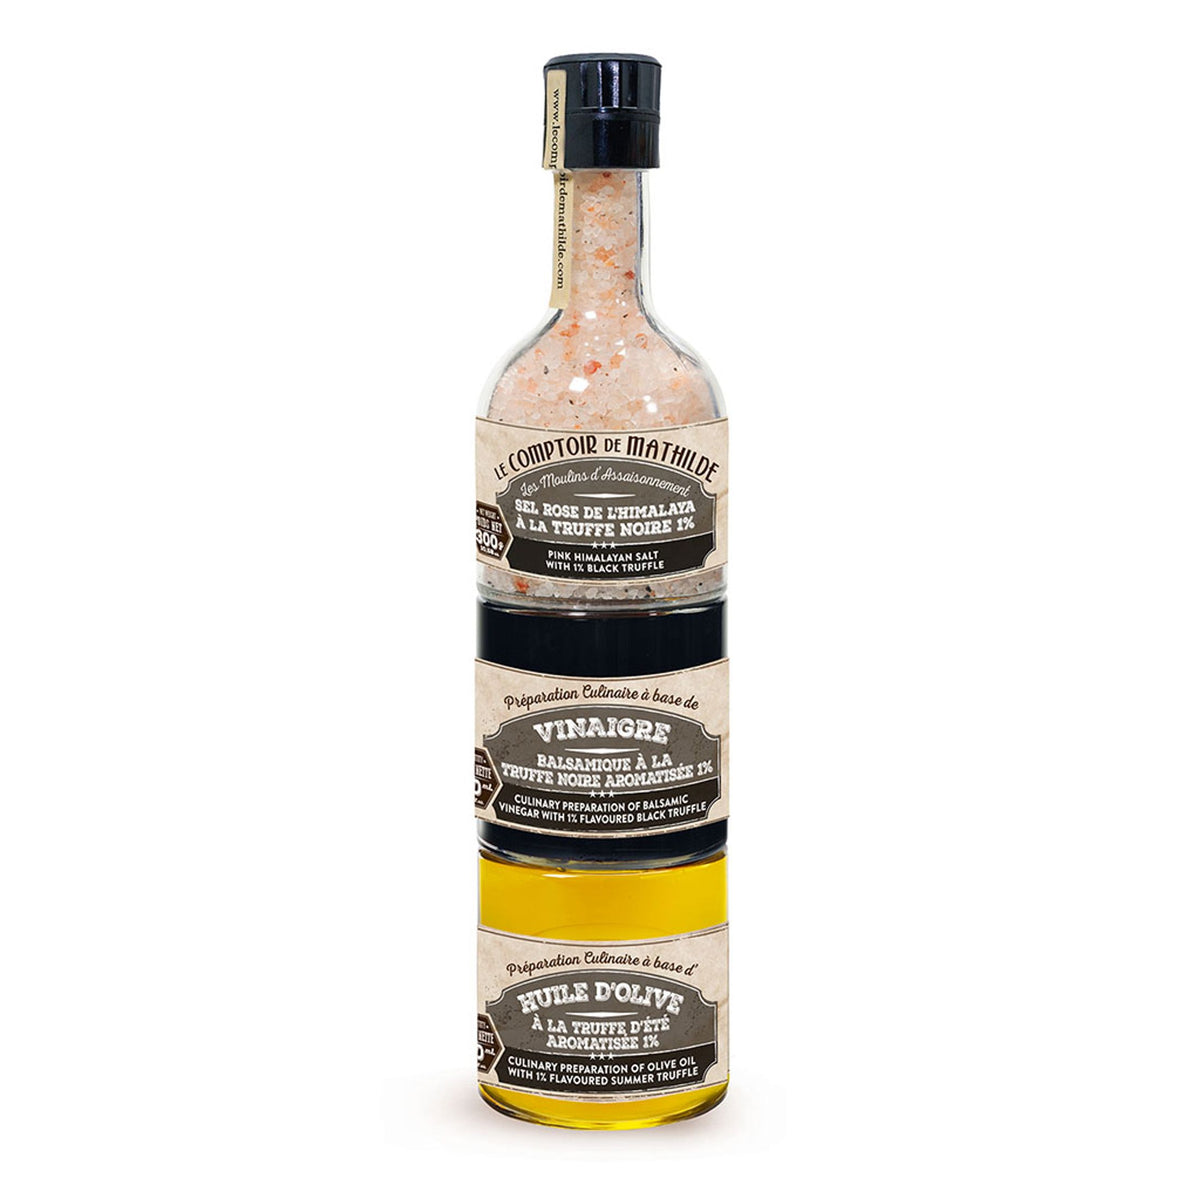 BELLE VOUS Sauce & Botellas de Licor 12 Pack - Spain